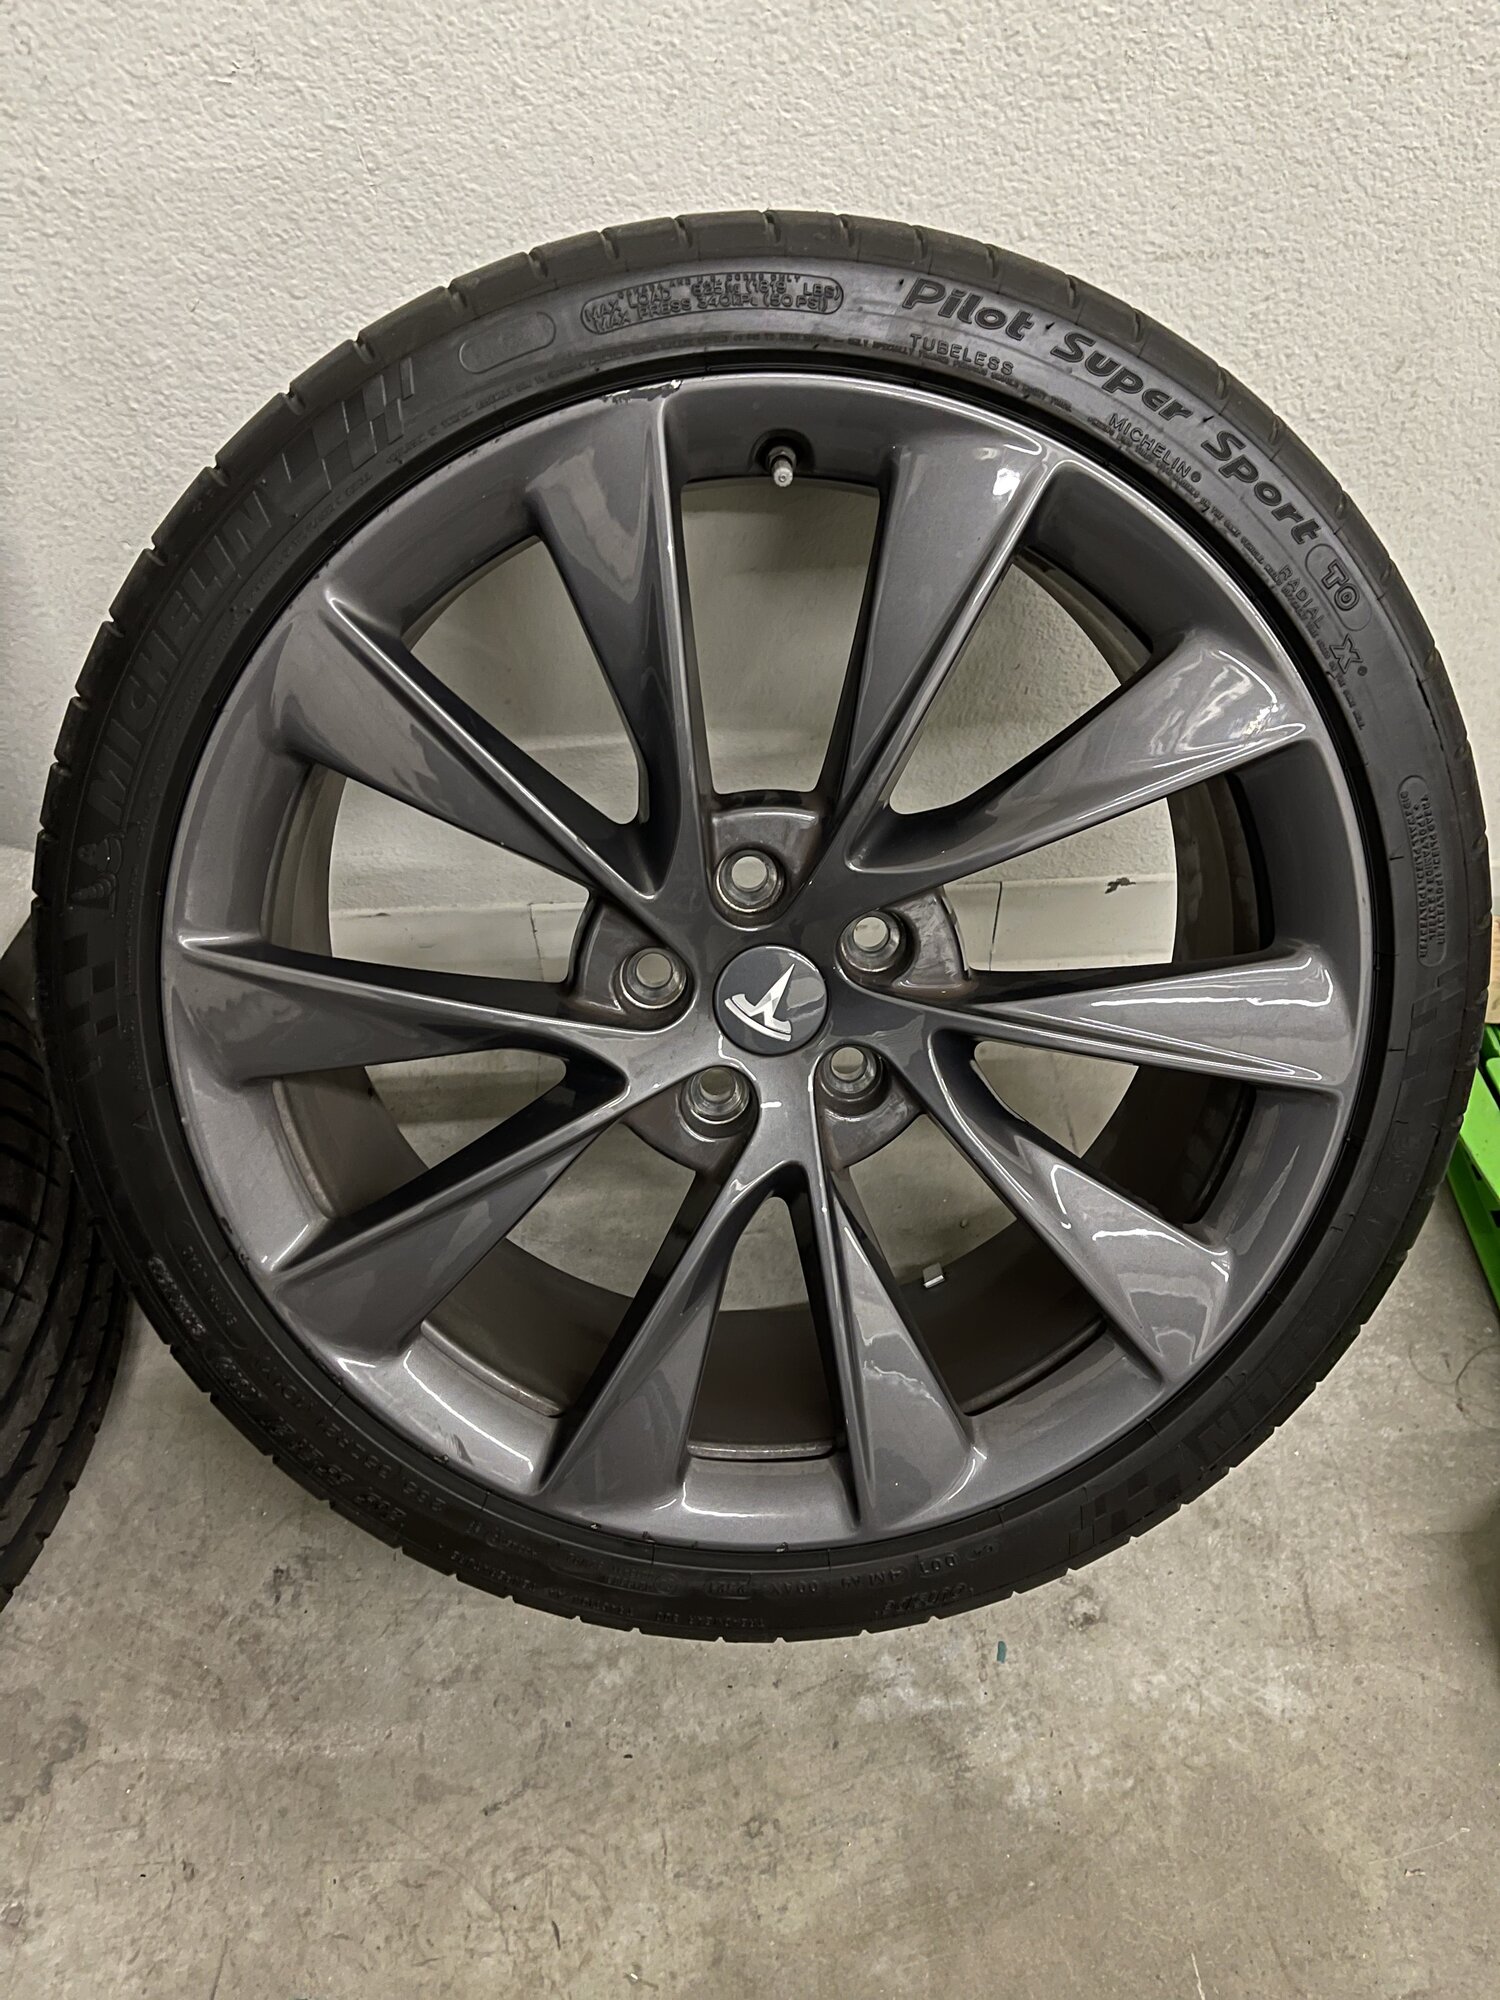 FS: Model S 21" Twin Turbine Wheel & Tire Package | Tesla Motors Club